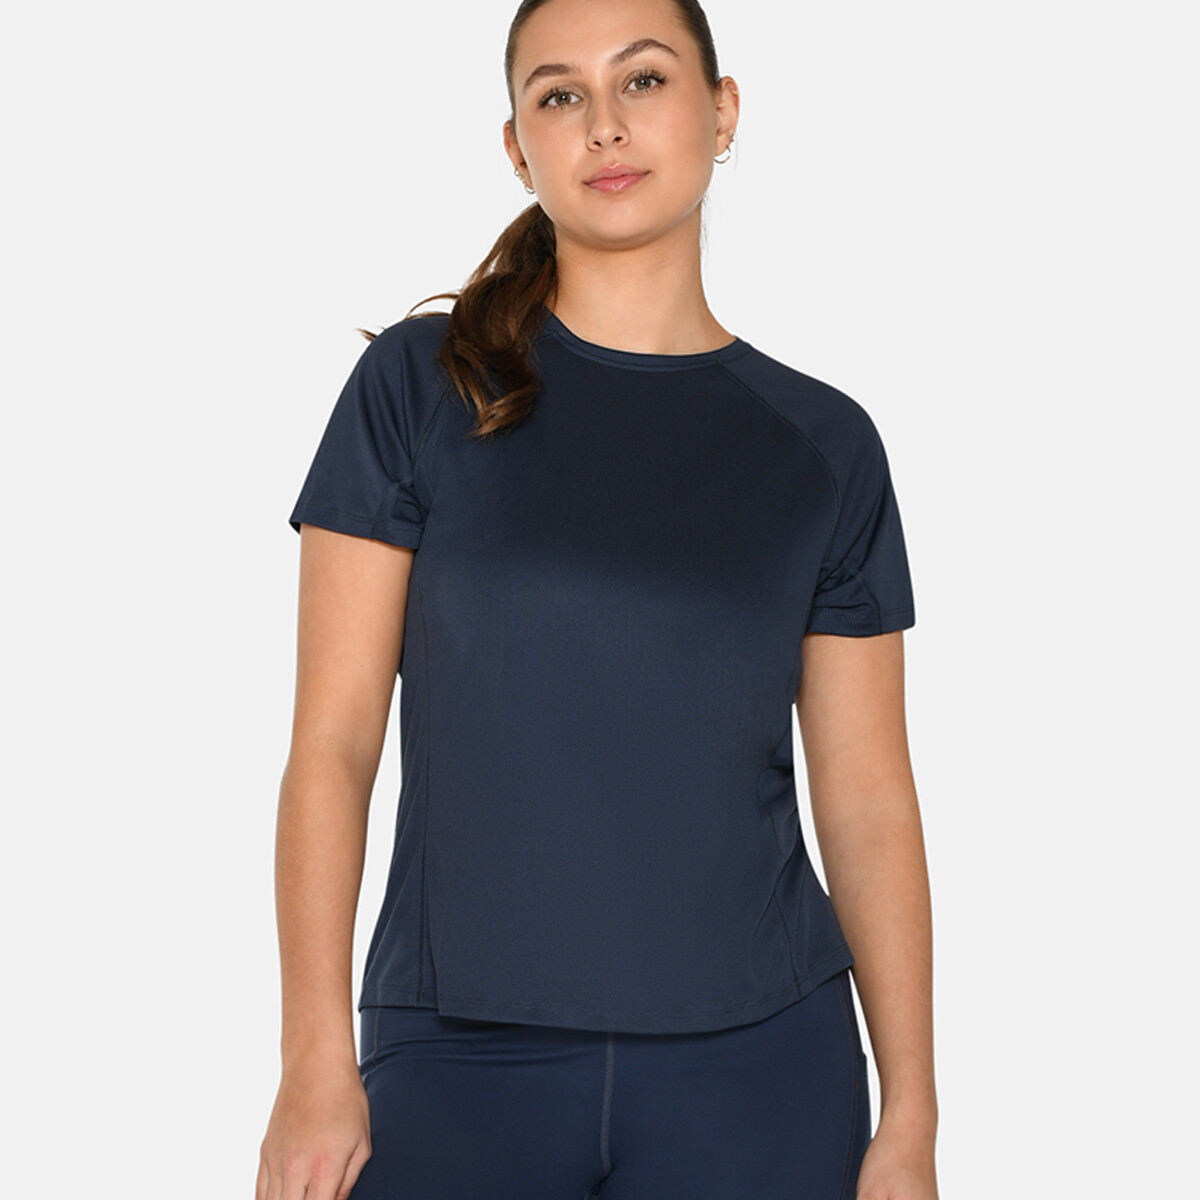 Se Zebdia Women Sports T-shirt, Farve: Blå, Størrelse: M, Dame hos Netlingeri.dk